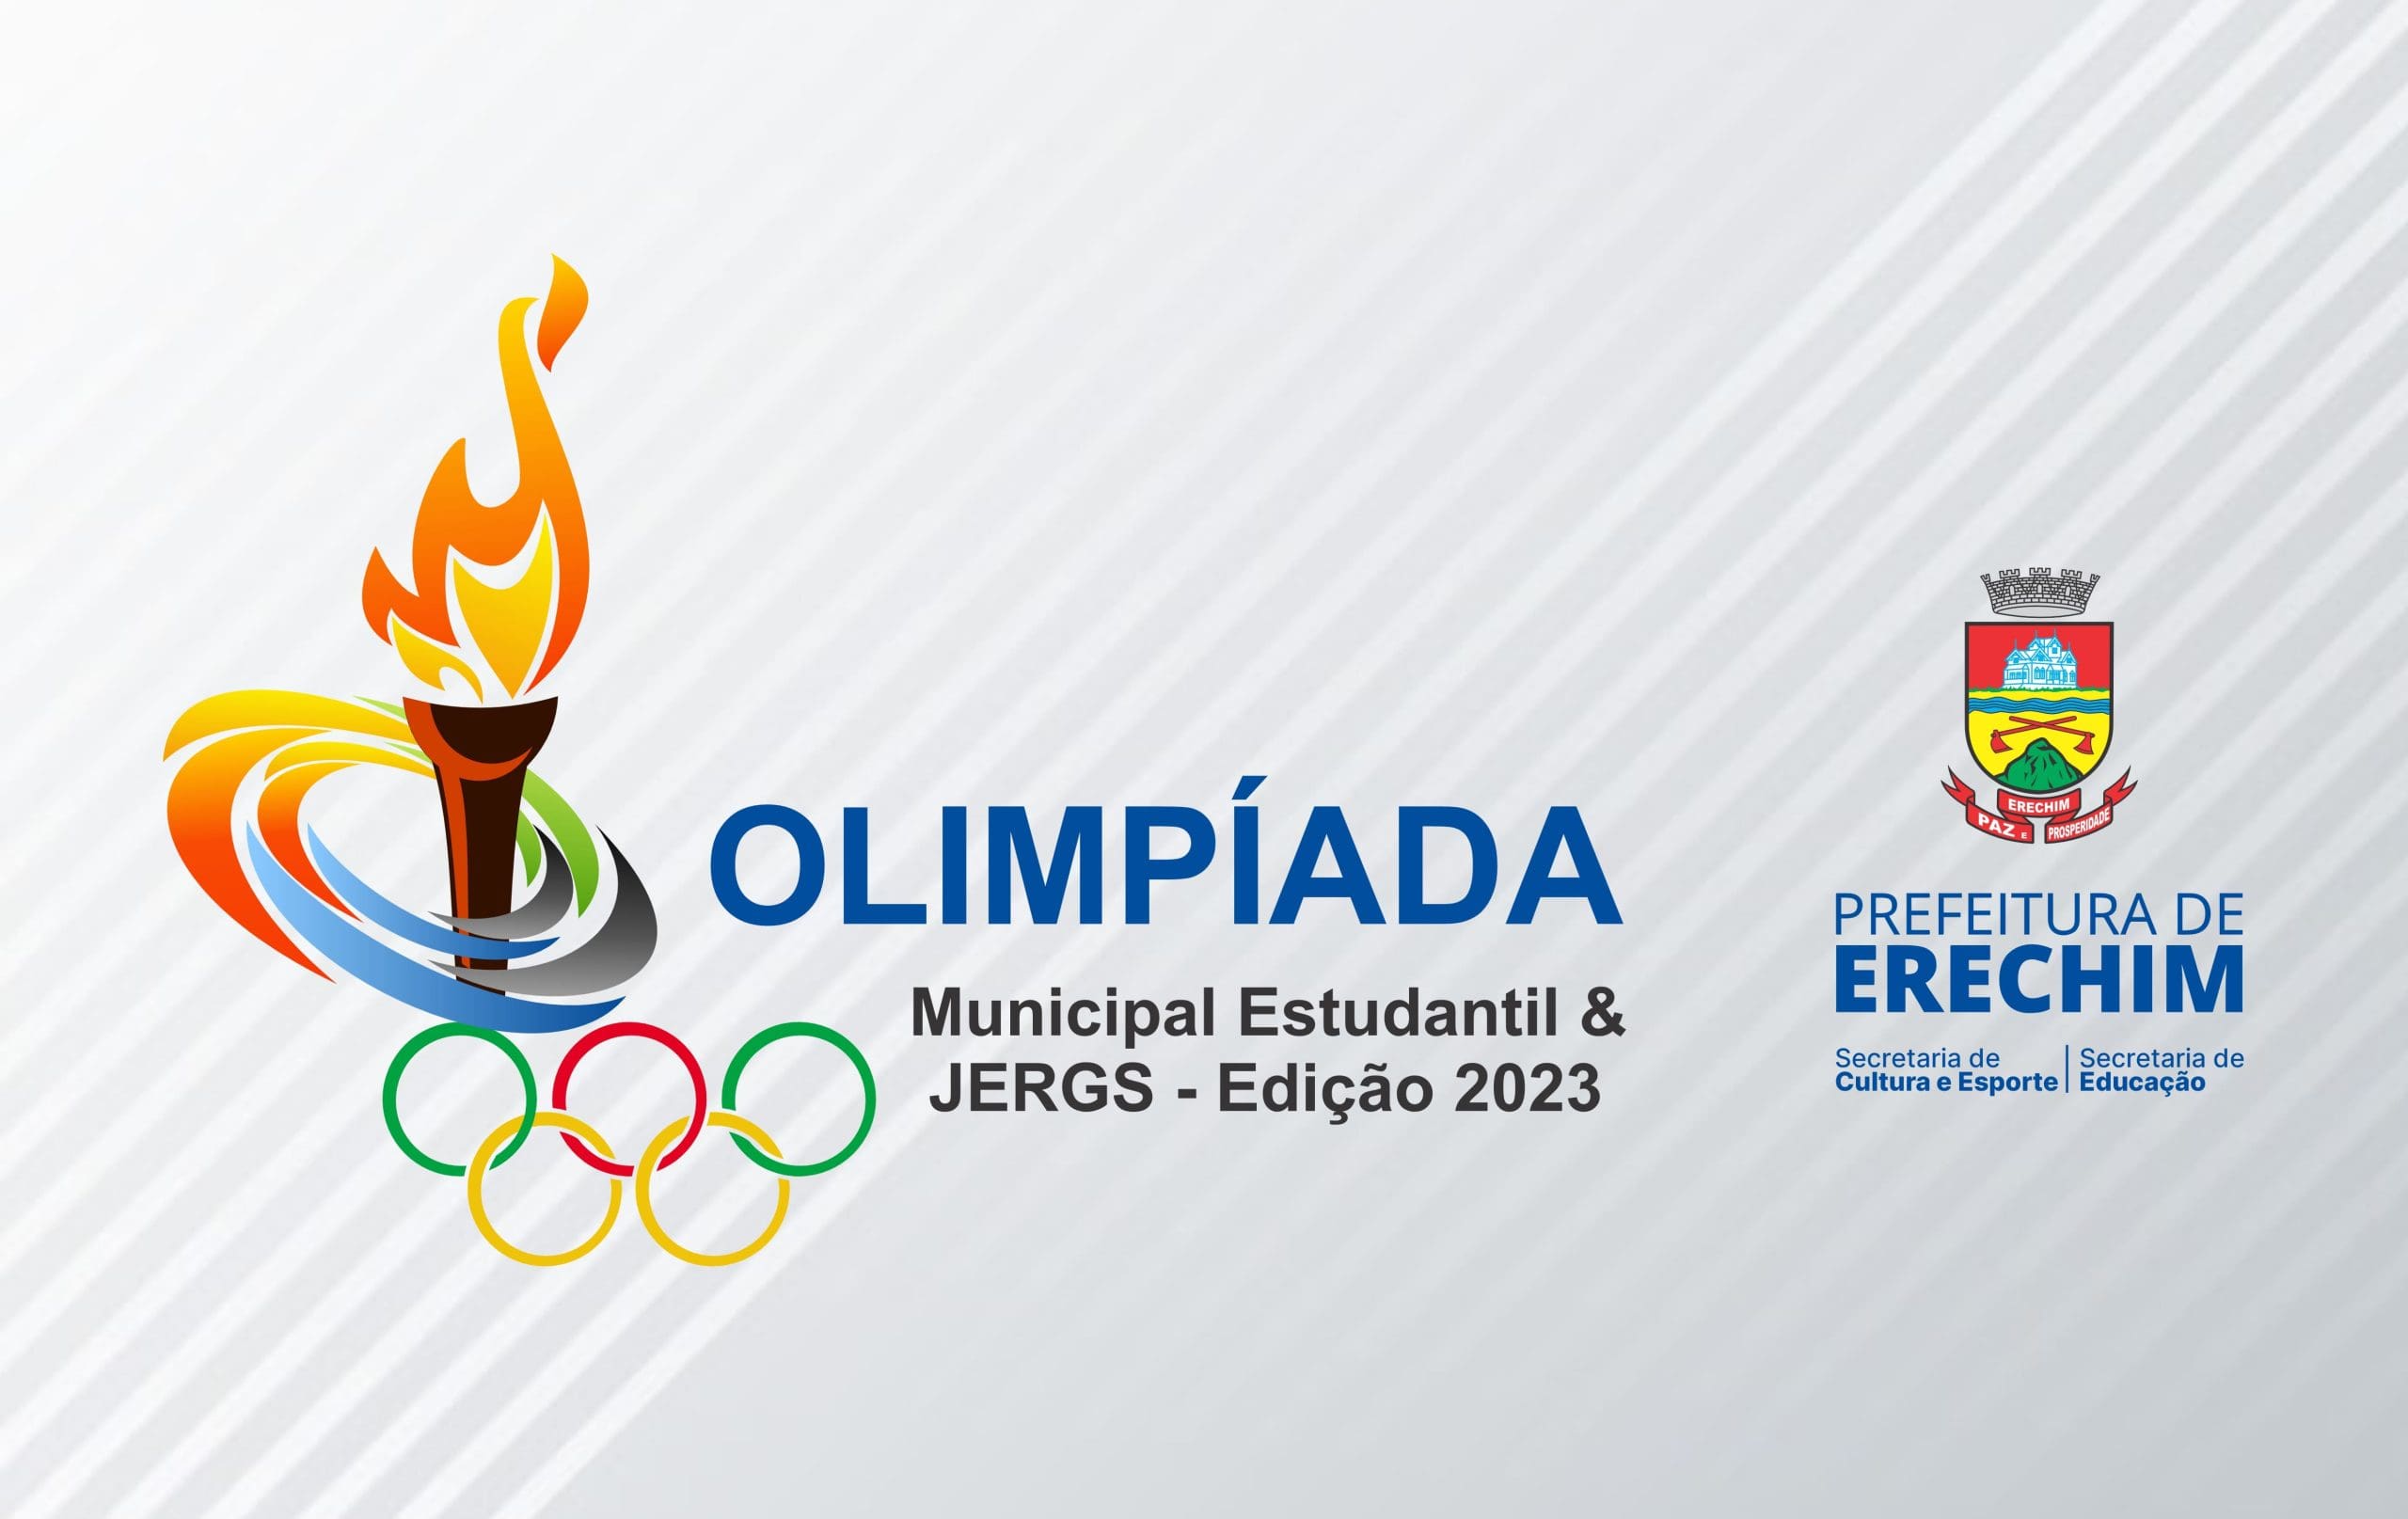 Olimpiada Municipal Estudantil e 1a Etapa do JERGS acontecem na proxima semana scaled